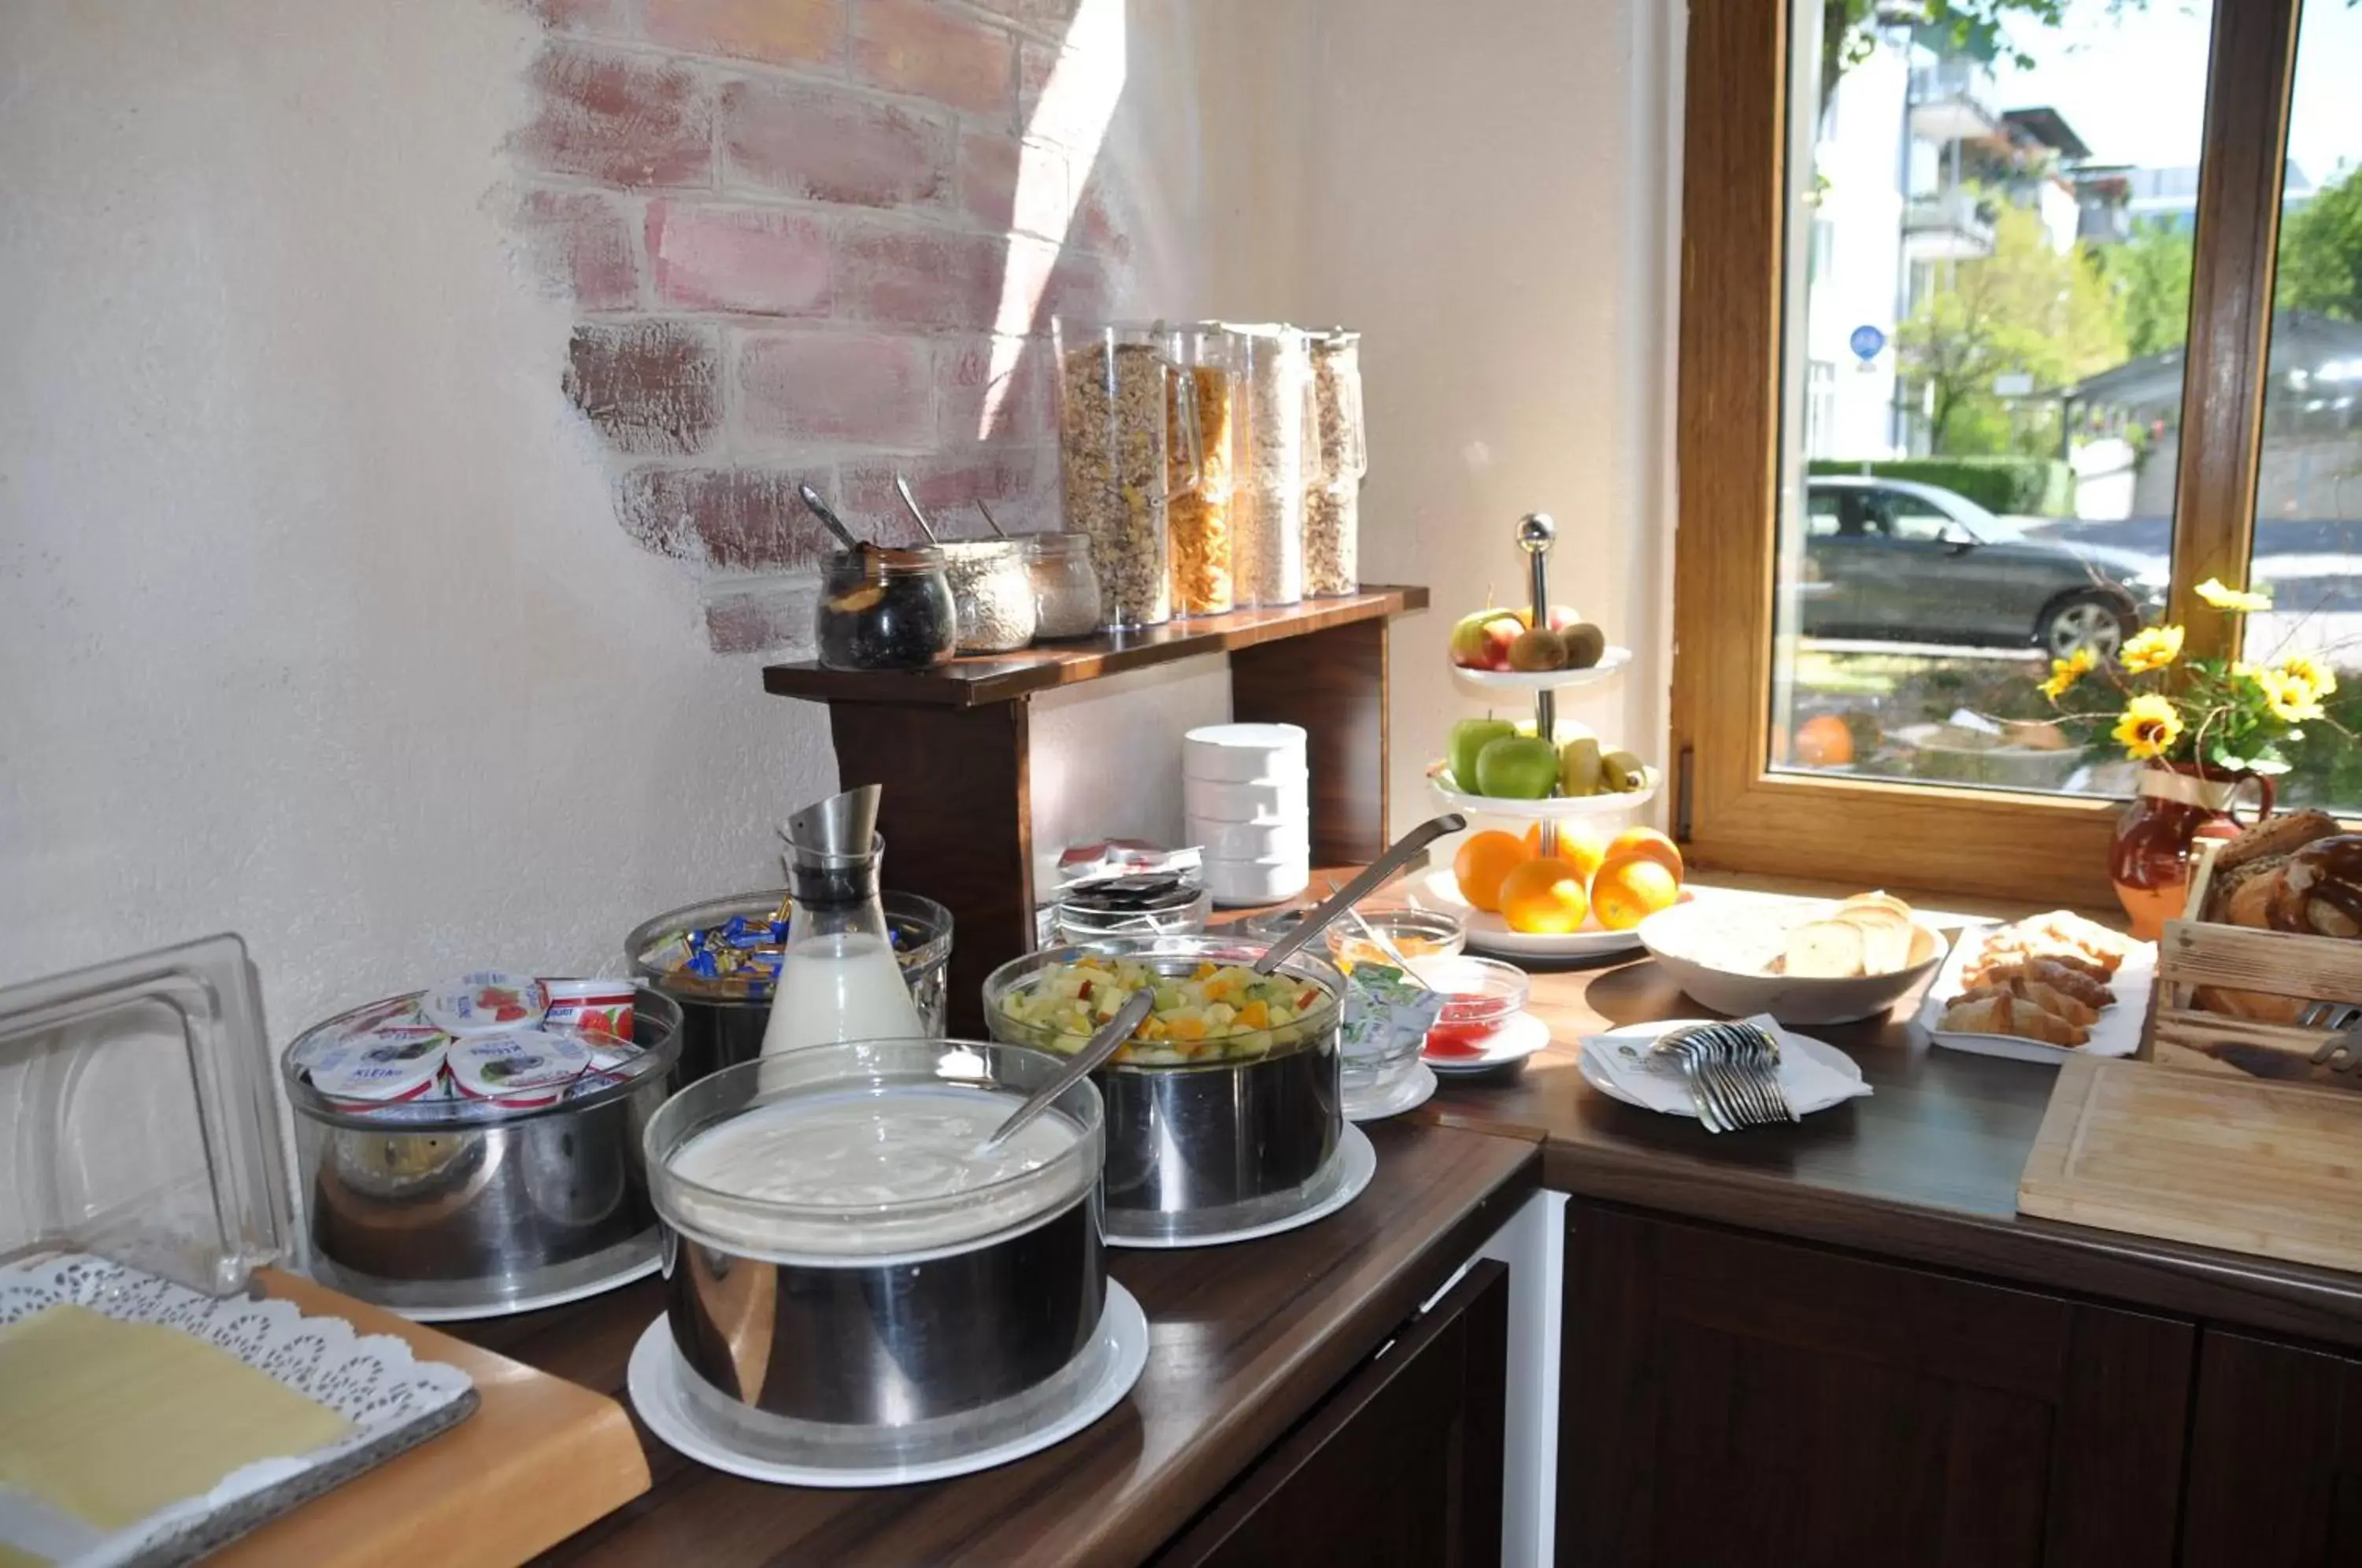 Buffet breakfast in Hotel Perlach Allee by Blattl